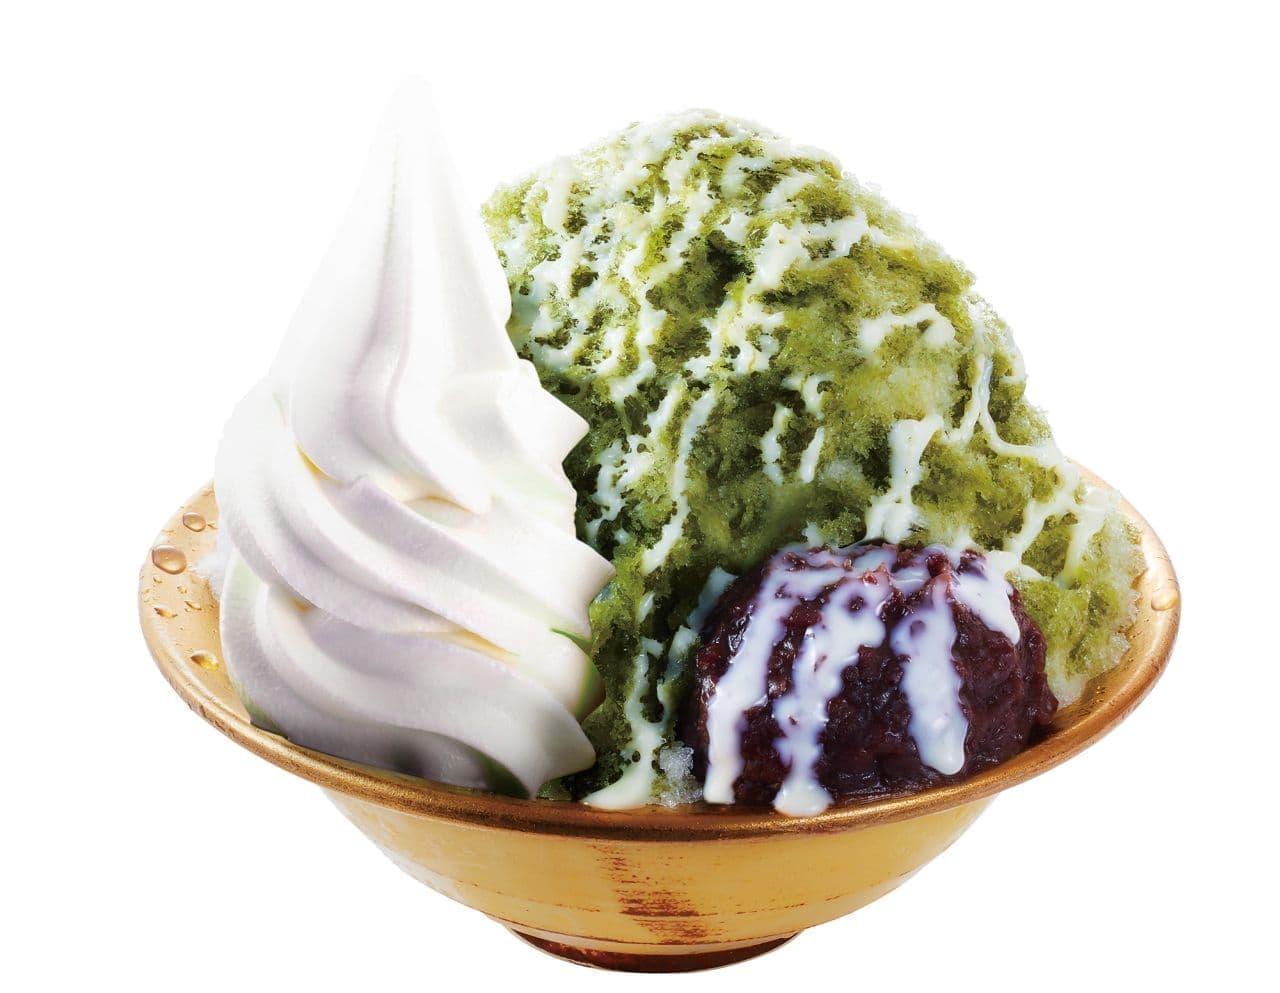 Komeda Coffee Shop Shaved Ice "Uji Green Tea